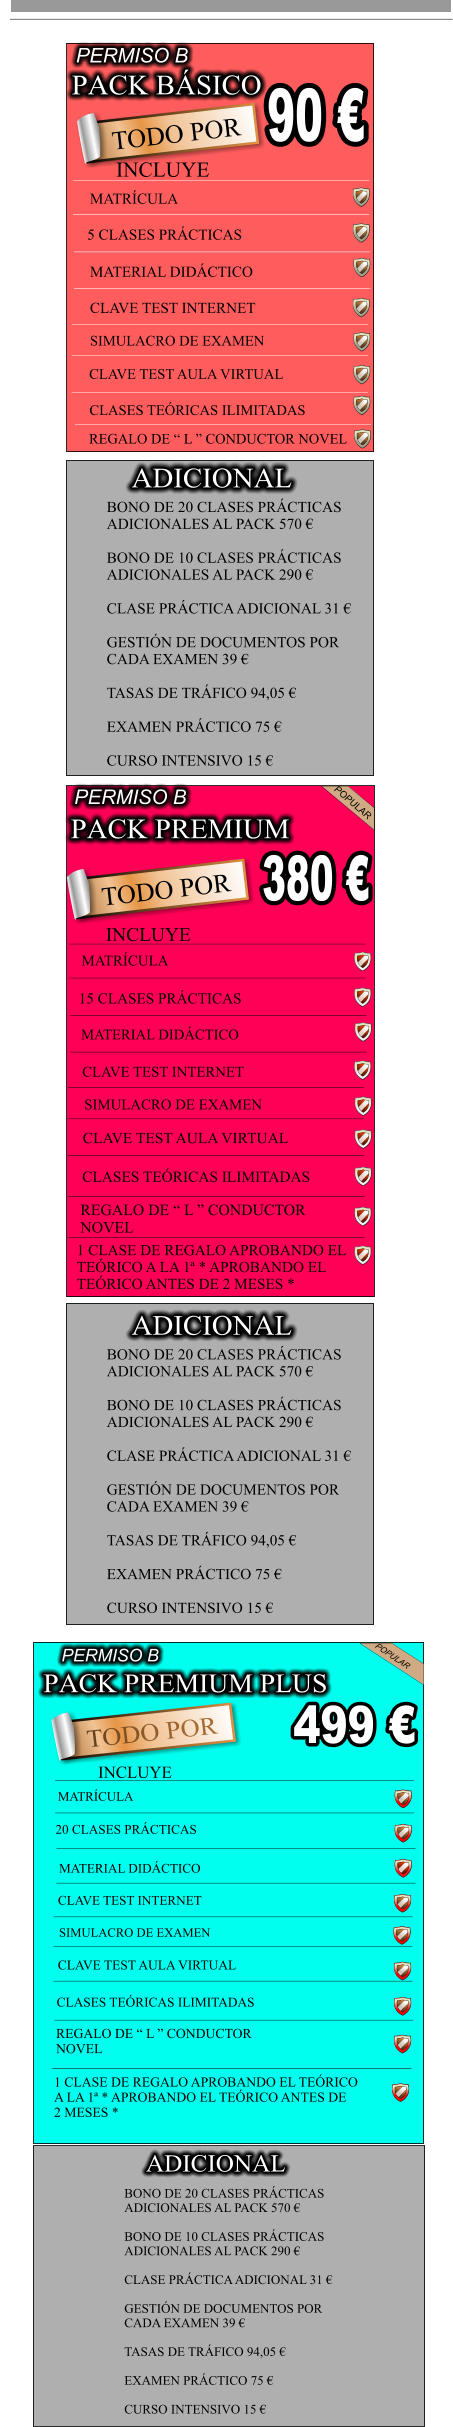 PACK BSICO                            90  TODO POR INCLUYE                                              MATRCULA  5 CLASES PRCTICAS     MATERIAL DIDCTICO     CLAVE TEST INTERNET   SIMULACRO DE EXAMEN  CLAVE TEST AULA VIRTUAL            CLASES TERICAS ILIMITADAS           REGALO DE  L  CONDUCTOR NOVEL    PERMISO B BONO DE 20 CLASES PRCTICAS  ADICIONALES AL PACK 570   BONO DE 10 CLASES PRCTICAS  ADICIONALES AL PACK 290   CLASE PRCTICA ADICIONAL 31   GESTIN DE DOCUMENTOS POR  CADA EXAMEN 39   TASAS DE TRFICO 94,05   EXAMEN PRCTICO 75   CURSO INTENSIVO 15  ADICIONAL PACK PREMIUM                             TODO POR                            380  PERMISO B POPULAR INCLUYE MATRCULA 15 CLASES PRCTICAS MATERIAL DIDCTICO CLAVE TEST INTERNET SIMULACRO DE EXAMEN CLAVE TEST AULA VIRTUAL CLASES TERICAS ILIMITADAS REGALO DE  L  CONDUCTOR  NOVEL 1 CLASE DE REGALO APROBANDO EL  TERICO A LA 1 * APROBANDO EL  TERICO ANTES DE 2 MESES * BONO DE 20 CLASES PRCTICAS  ADICIONALES AL PACK 570   BONO DE 10 CLASES PRCTICAS  ADICIONALES AL PACK 290   CLASE PRCTICA ADICIONAL 31   GESTIN DE DOCUMENTOS POR  CADA EXAMEN 39   TASAS DE TRFICO 94,05   EXAMEN PRCTICO 75   CURSO INTENSIVO 15  ADICIONAL MATERIAL DIDCTICO     CLAVE TEST INTERNET   SIMULACRO DE EXAMEN  PACK PREMIUM PLUS                             TODO POR                            499  PERMISO B POPULAR INCLUYE MATRCULA 20 CLASES PRCTICAS CLAVE TEST AULA VIRTUAL CLASES TERICAS ILIMITADAS REGALO DE  L  CONDUCTOR  NOVEL 1 CLASE DE REGALO APROBANDO EL TERICO  A LA 1 * APROBANDO EL TERICO ANTES DE  2 MESES * BONO DE 20 CLASES PRCTICAS  ADICIONALES AL PACK 570   BONO DE 10 CLASES PRCTICAS  ADICIONALES AL PACK 290   CLASE PRCTICA ADICIONAL 31   GESTIN DE DOCUMENTOS POR  CADA EXAMEN 39   TASAS DE TRFICO 94,05   EXAMEN PRCTICO 75   CURSO INTENSIVO 15  ADICIONAL